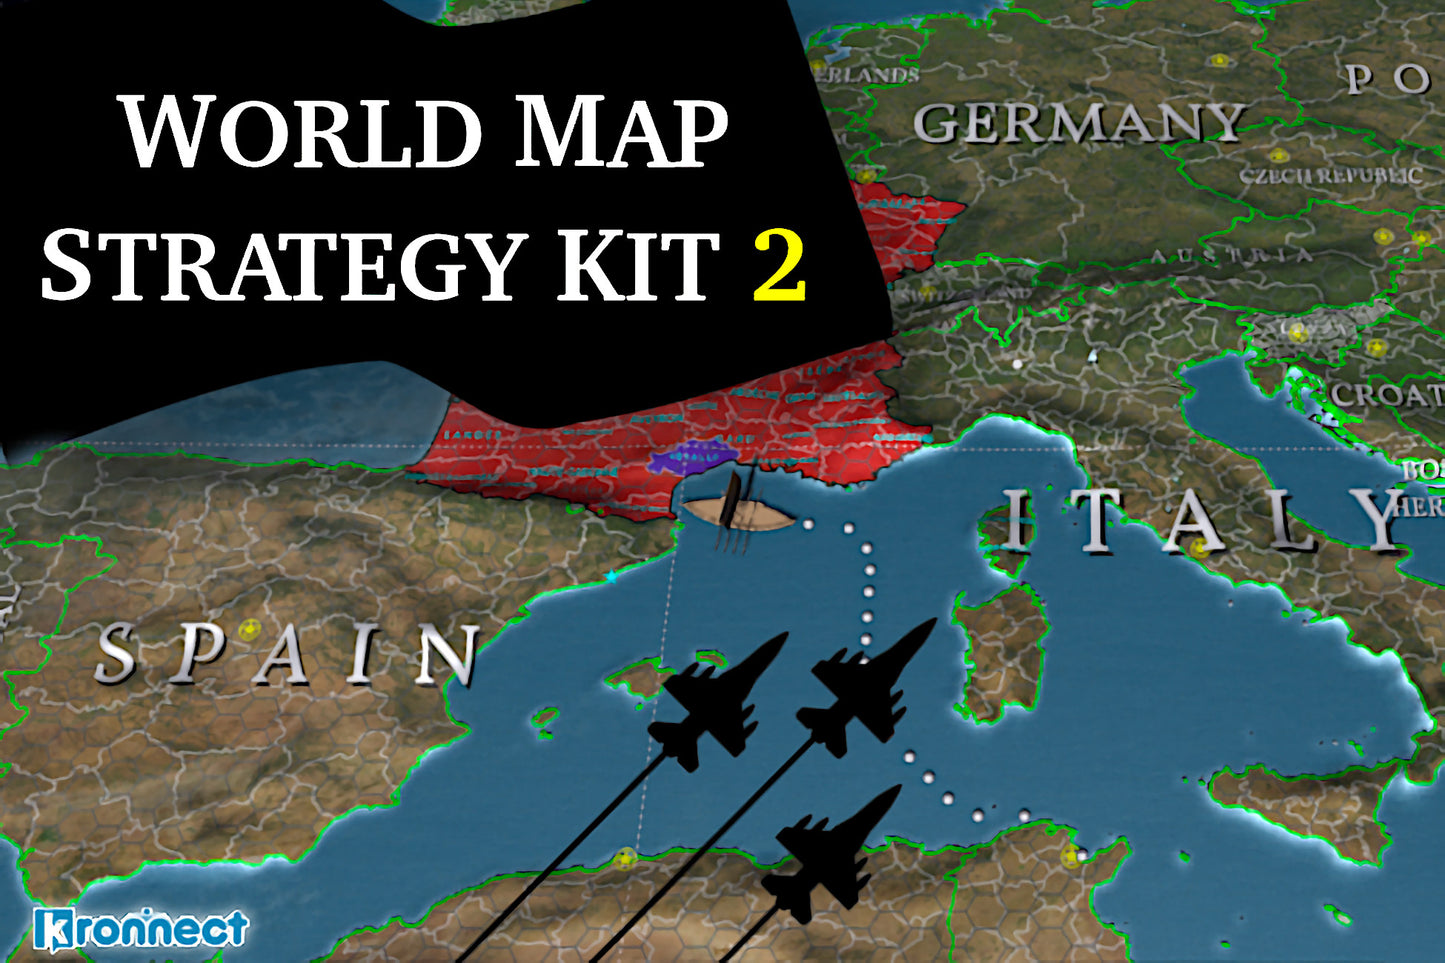 World Map Strategy Kit 2